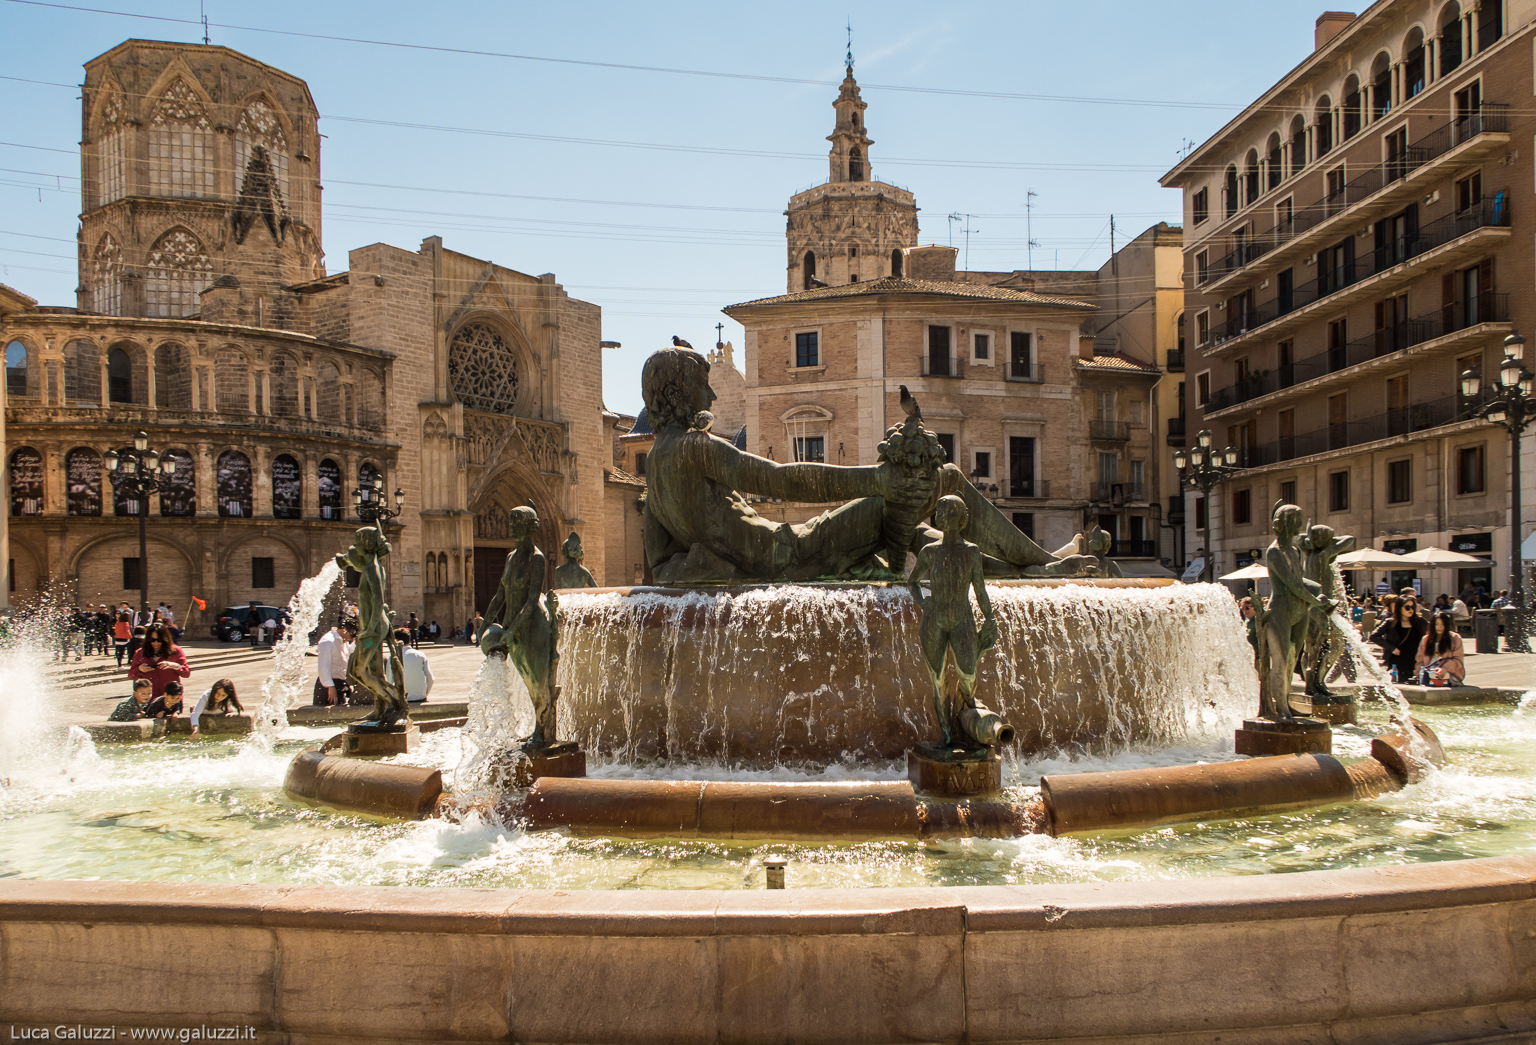 Valencia è la terza città della Spagna per numero di abitanti, dopo Madrid e Barcellona